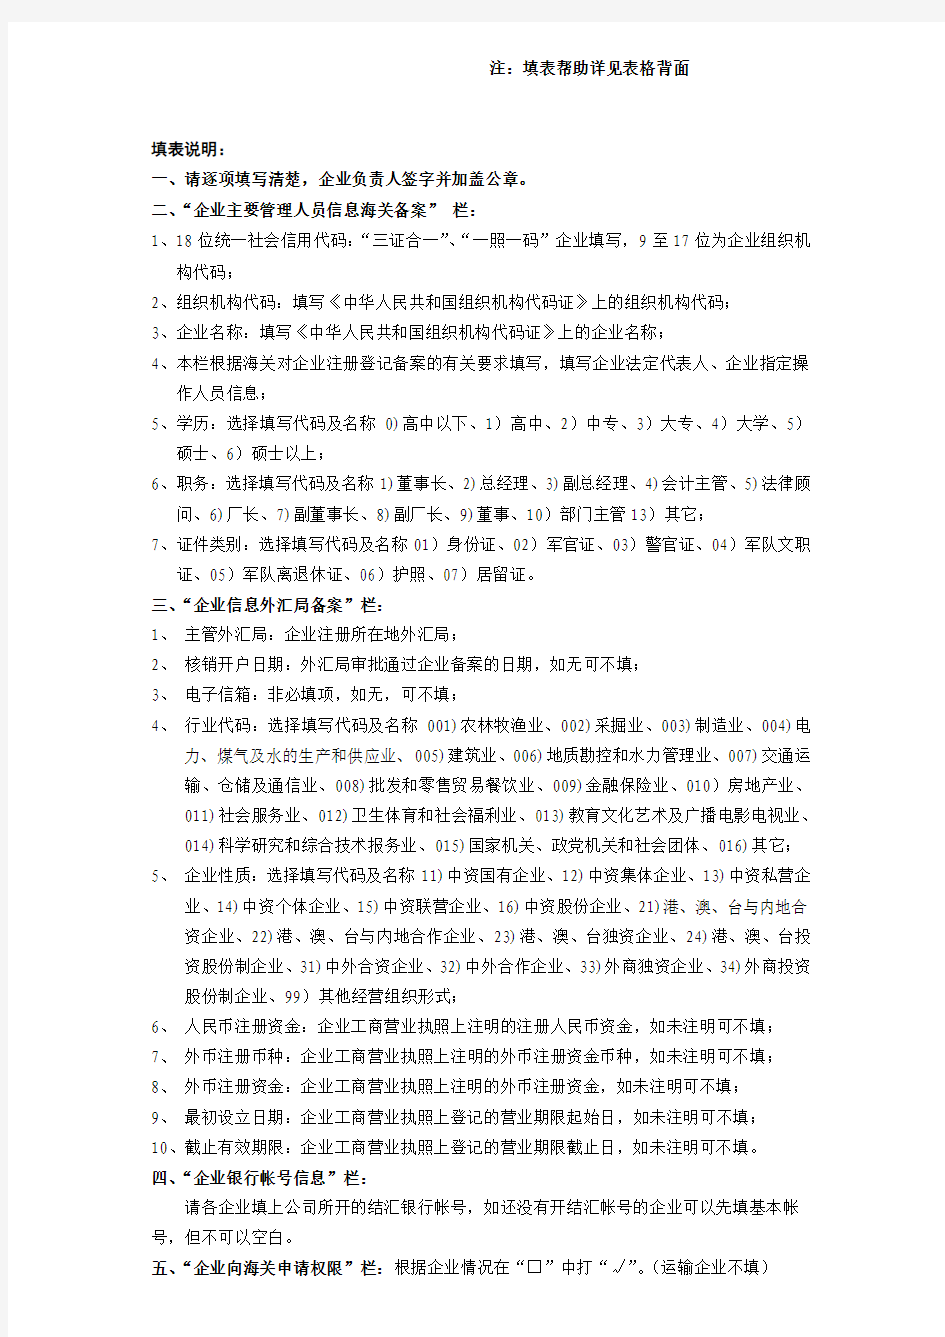 中国电子口岸数据中心大连分中心新入企业情况登记表